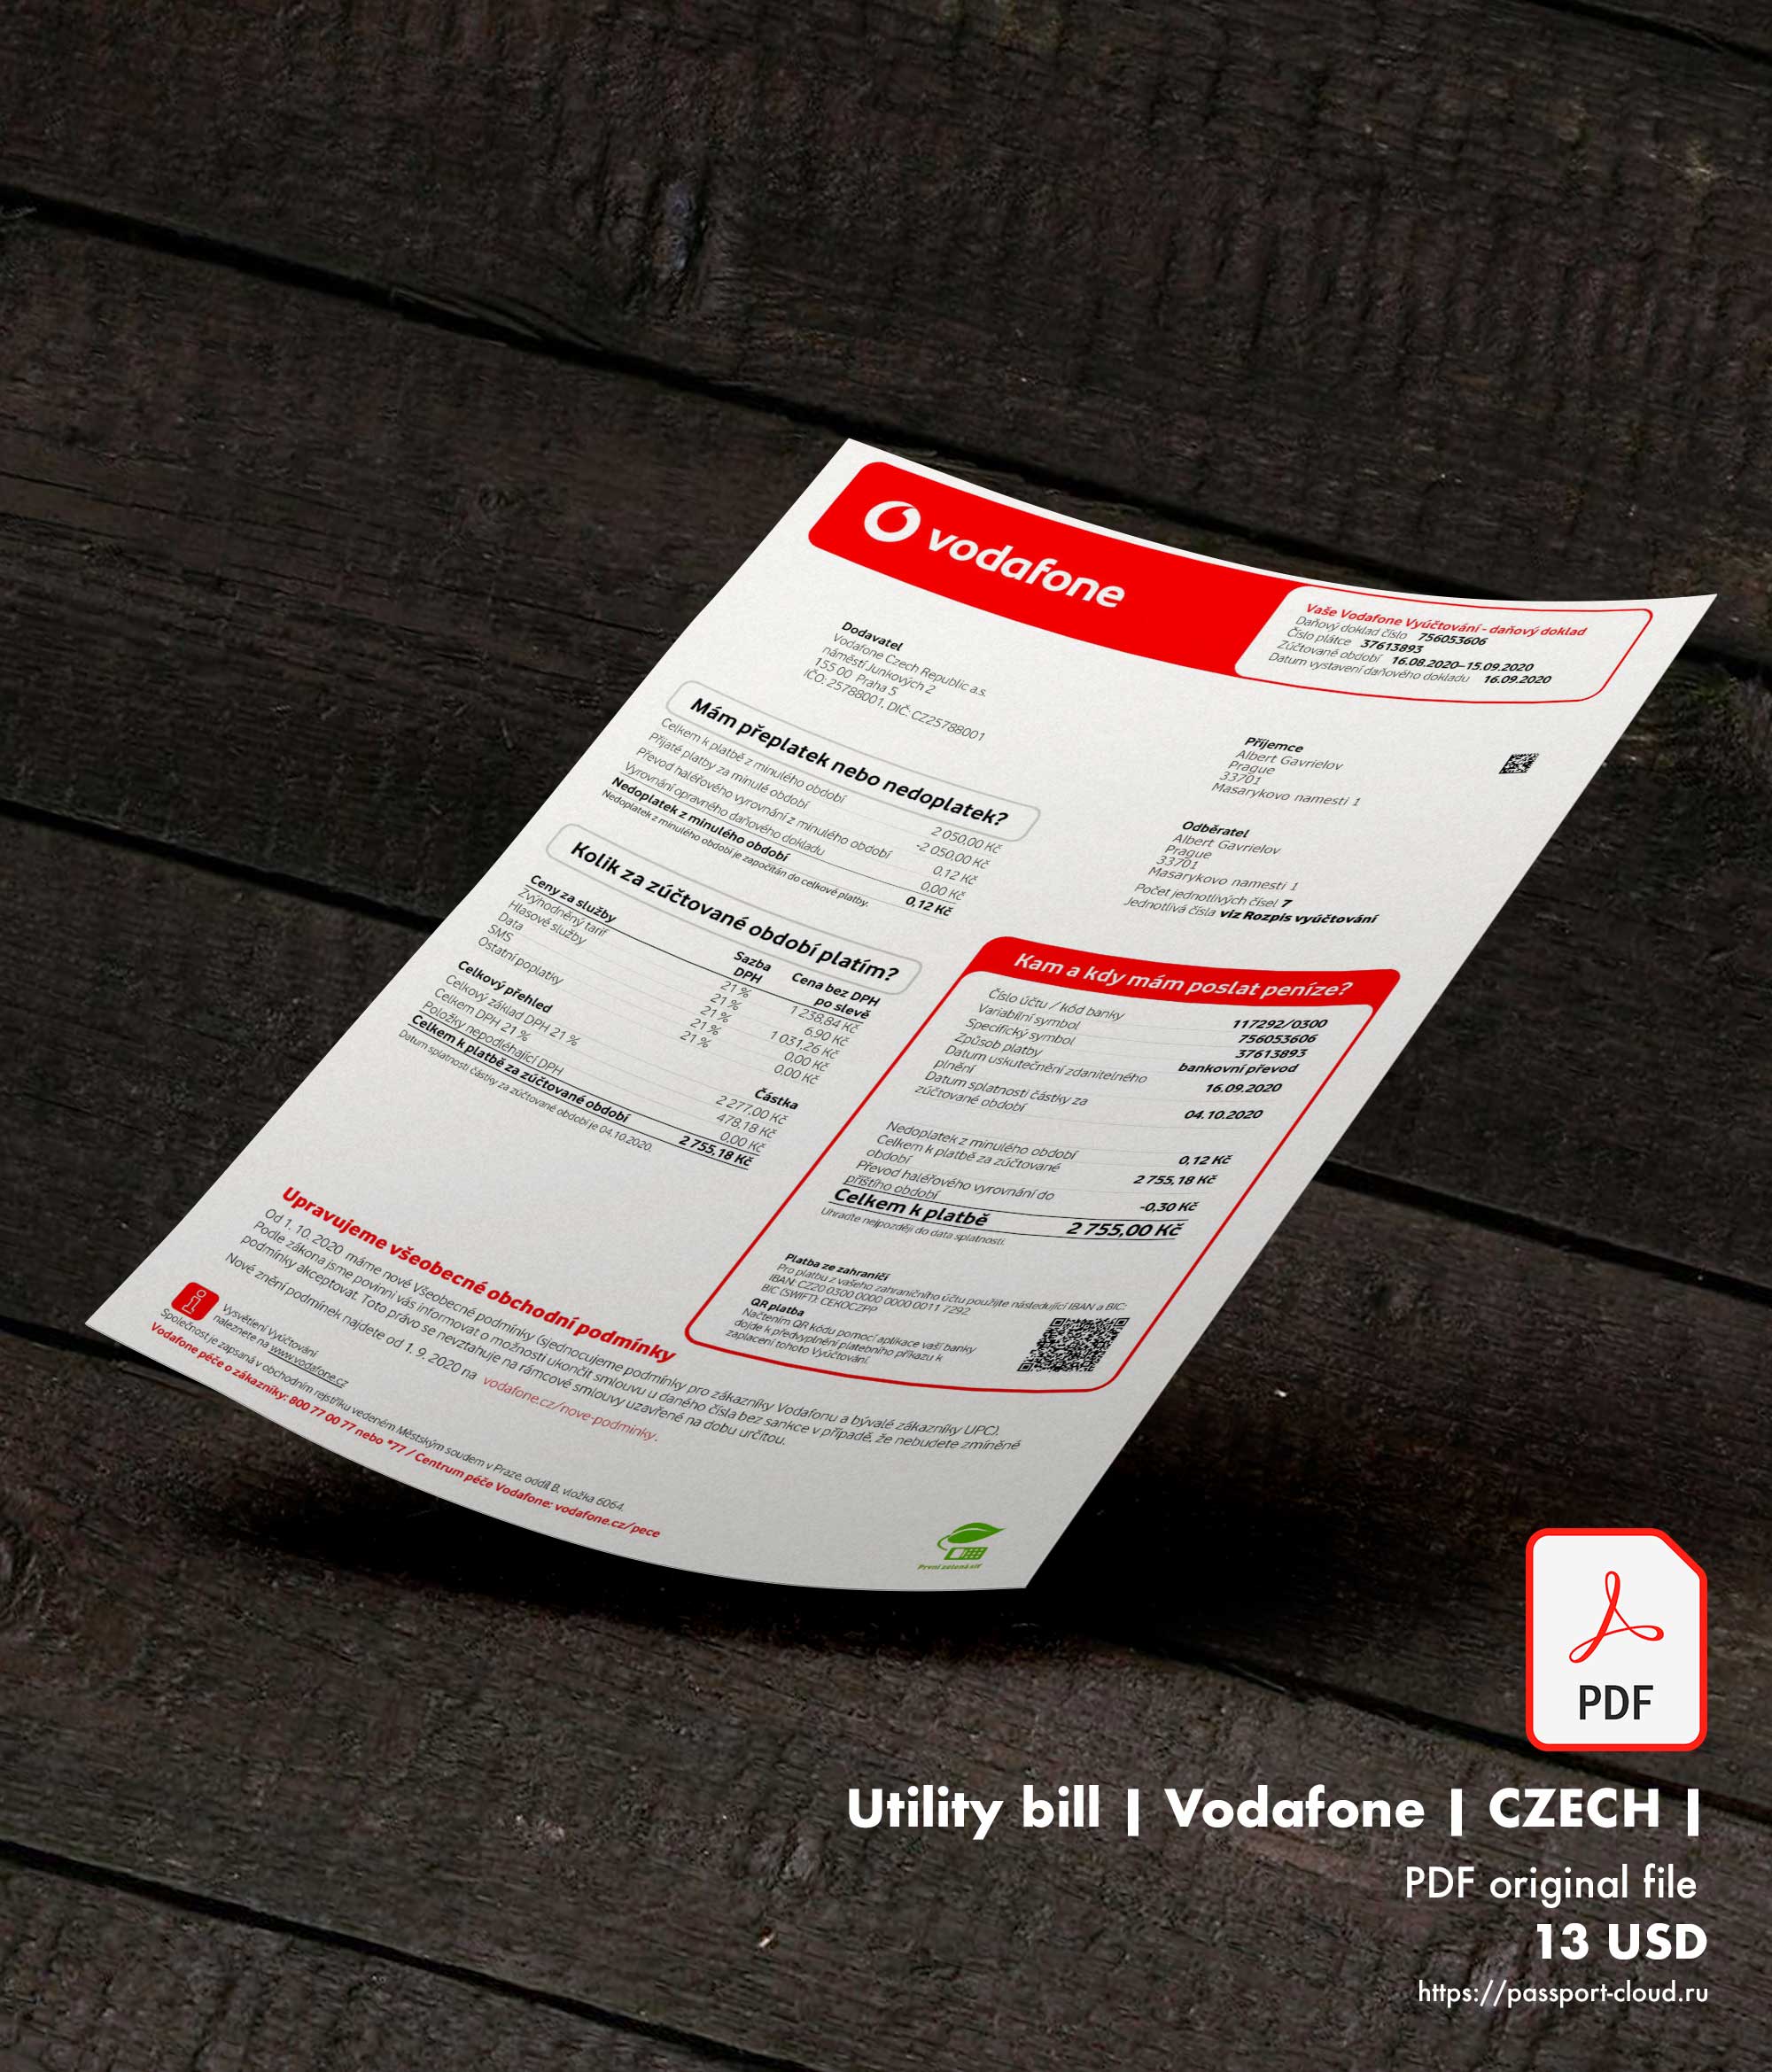 Utility bill | Vodafone | CZECH | Czech Republic |1